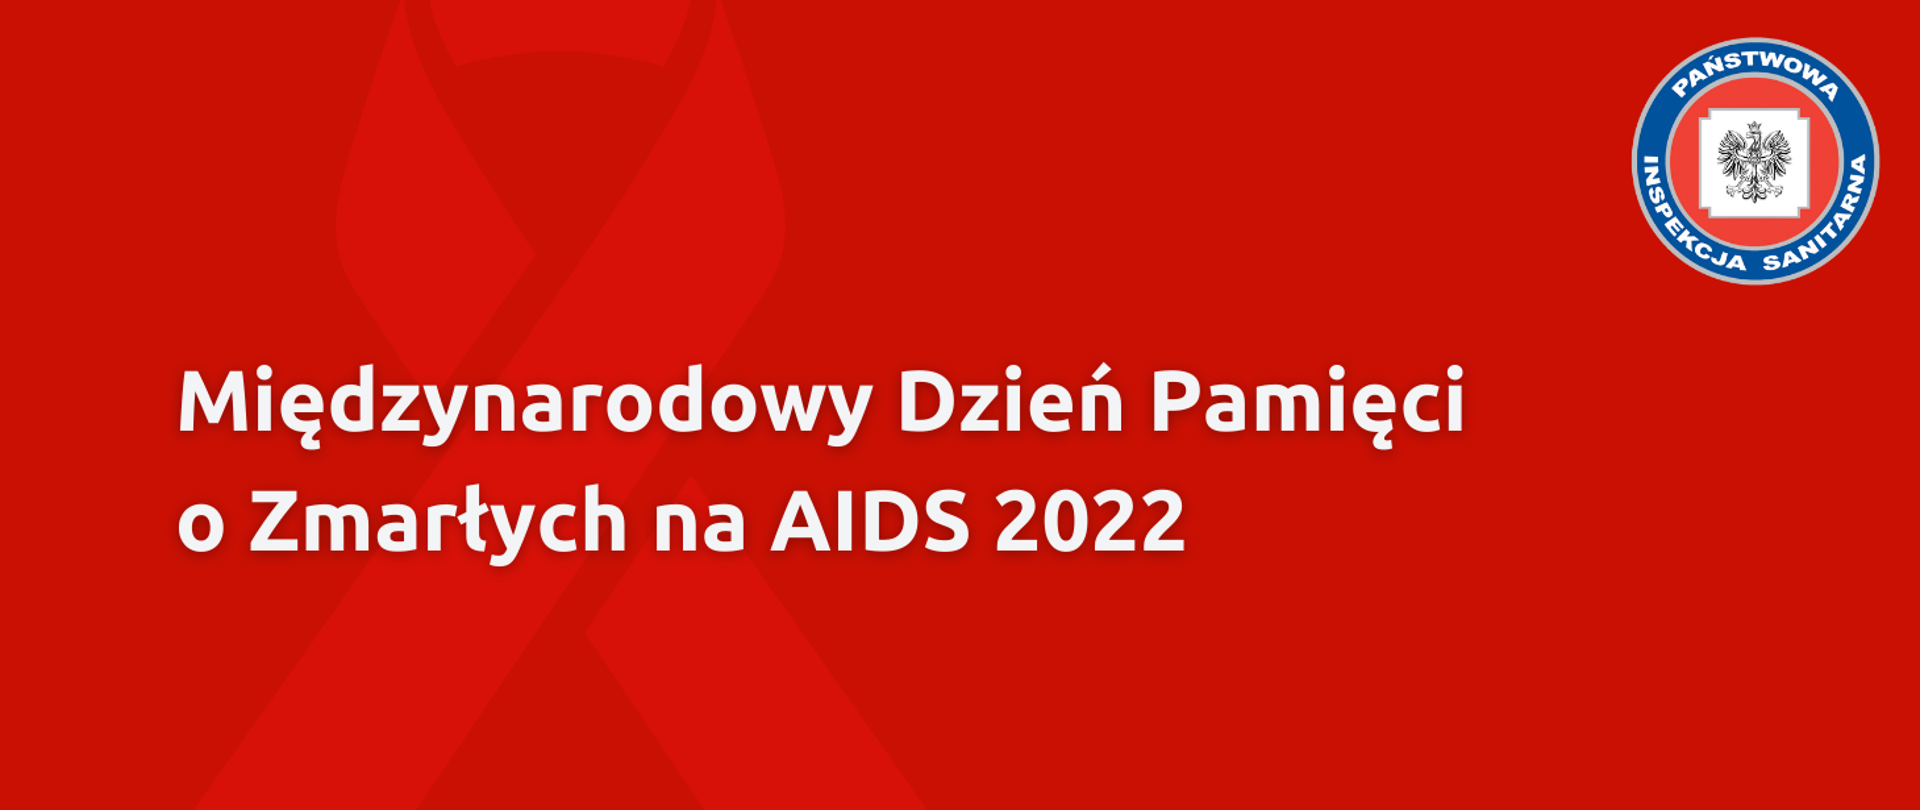 Grafika z tekstem: Międzynarodowy Dzień Pamięci o Zmarłych na AIDS 2022. W prawym górnym rogu logo Państwowej Inspekcji Sanitarnej. W tle czerwona wstążeczka.